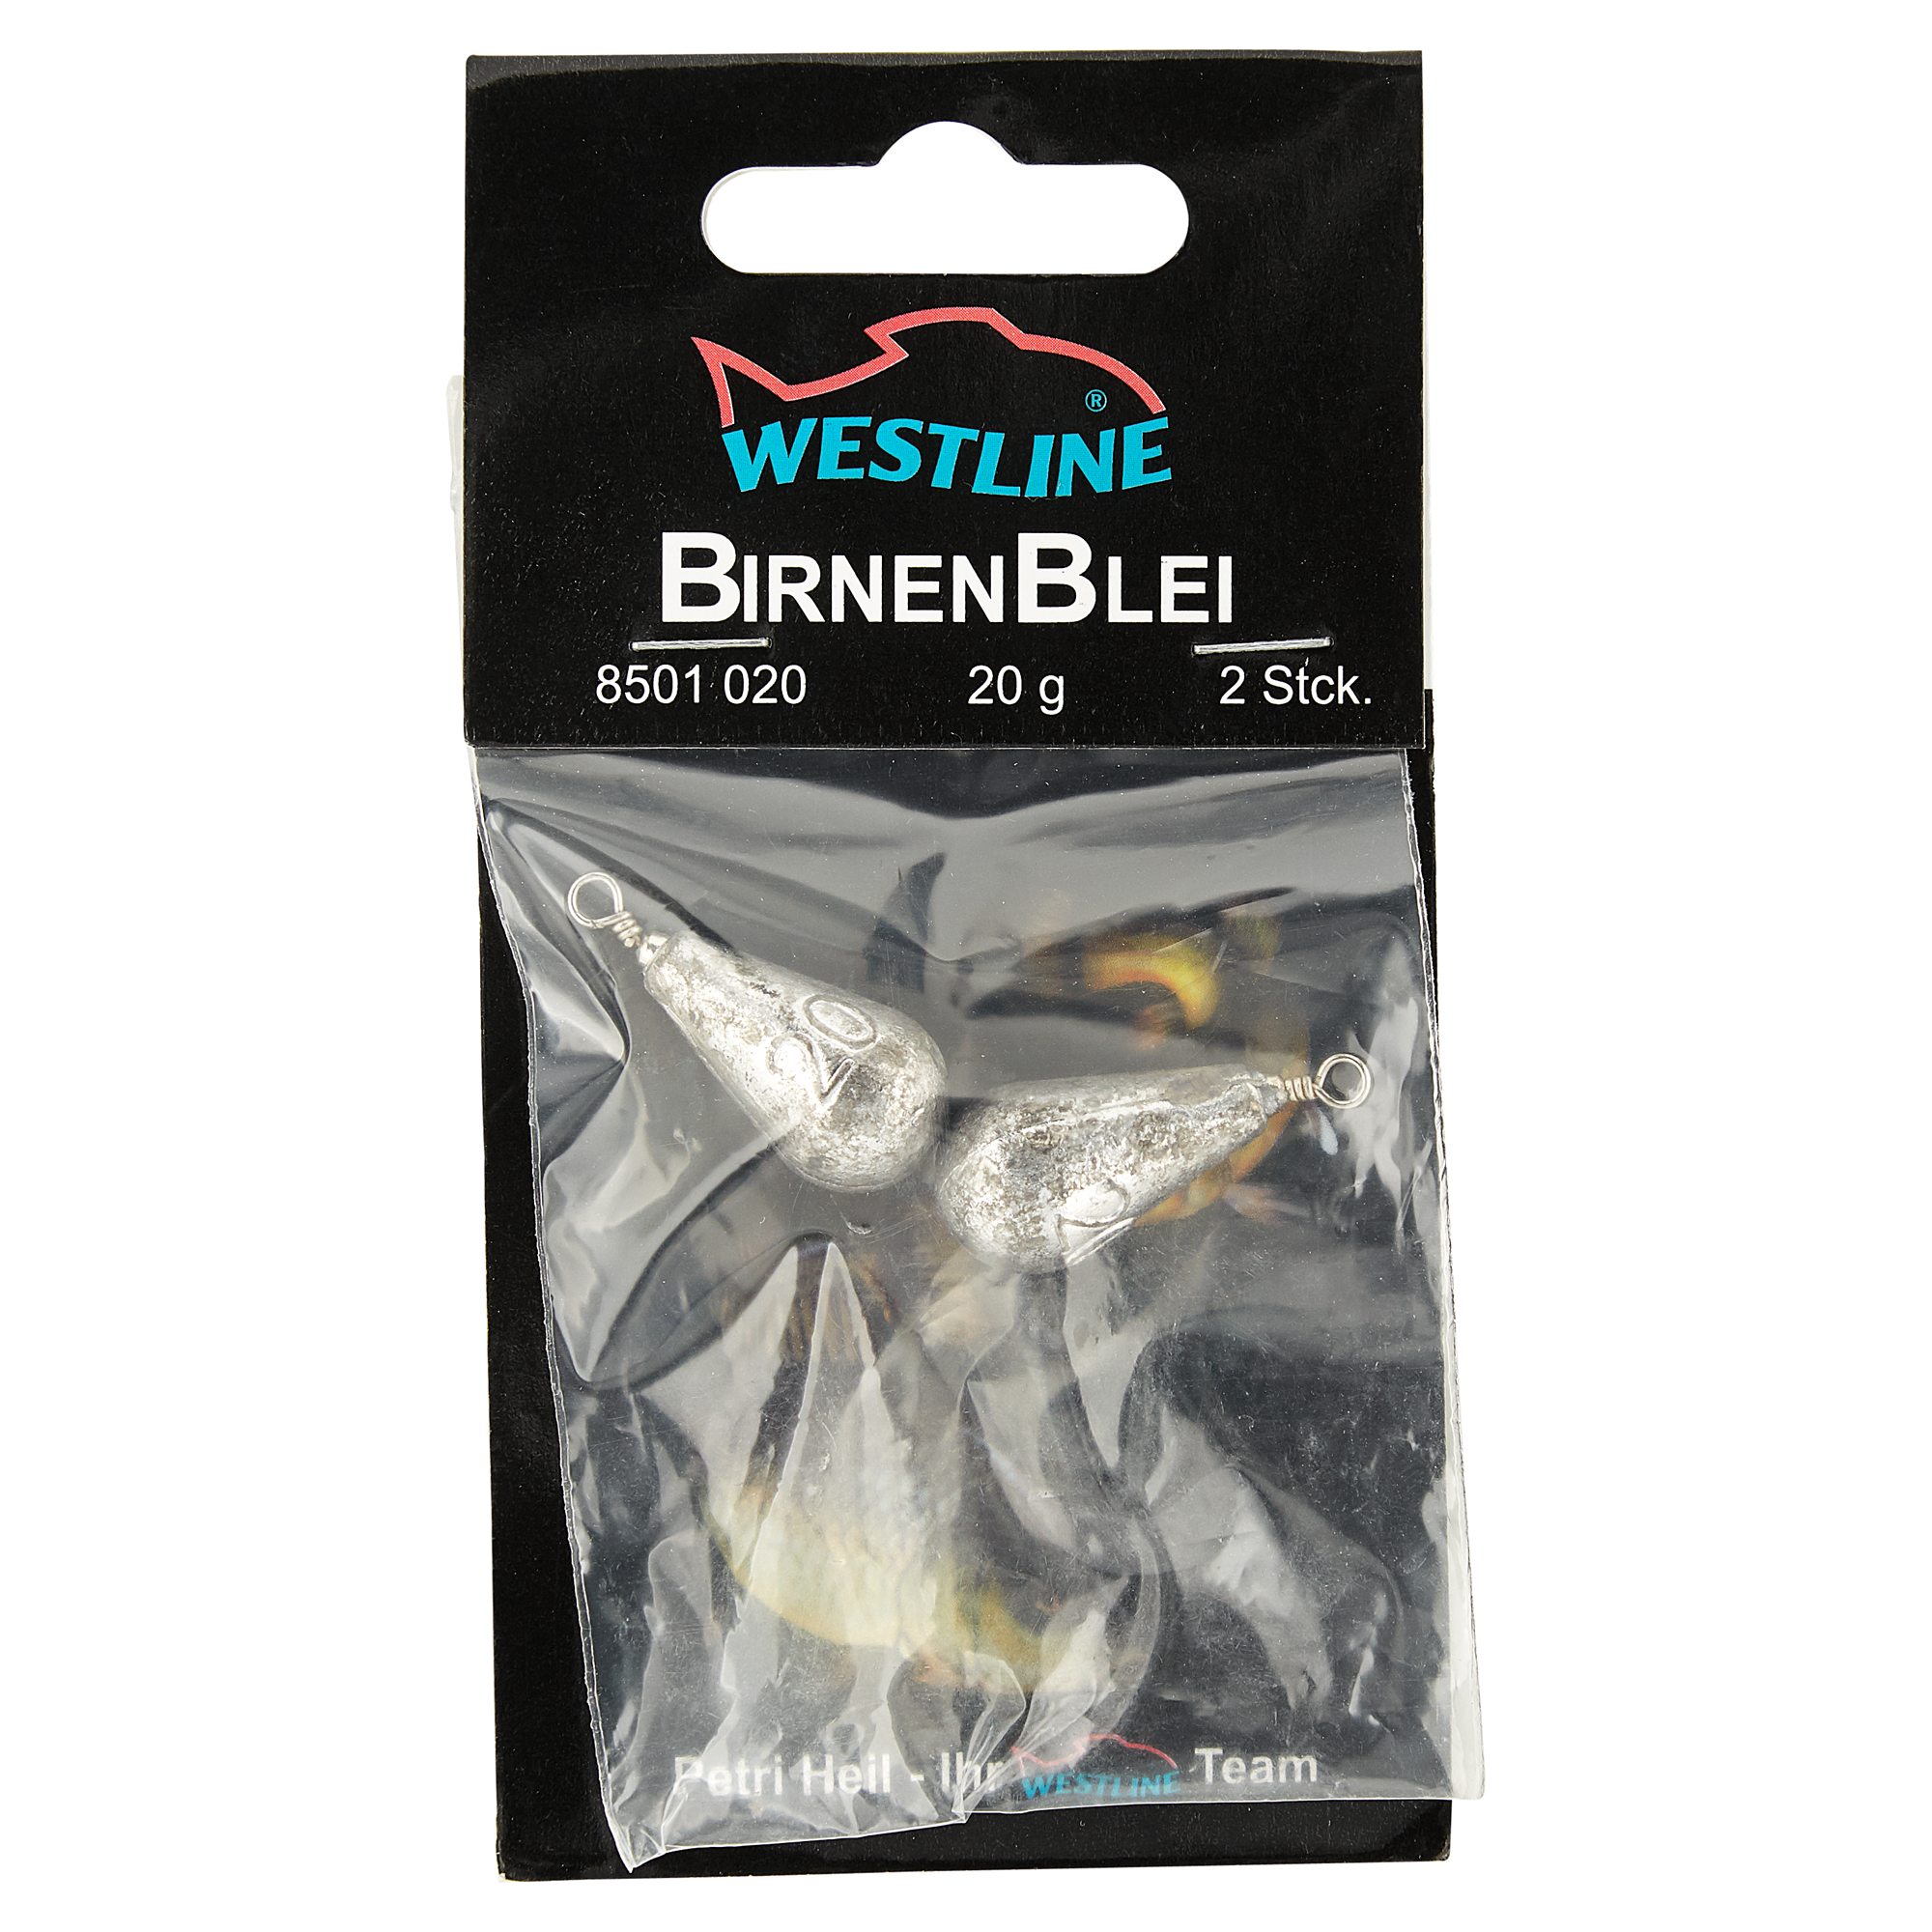 Birnenbleie mit Wirbel 20 g + product picture